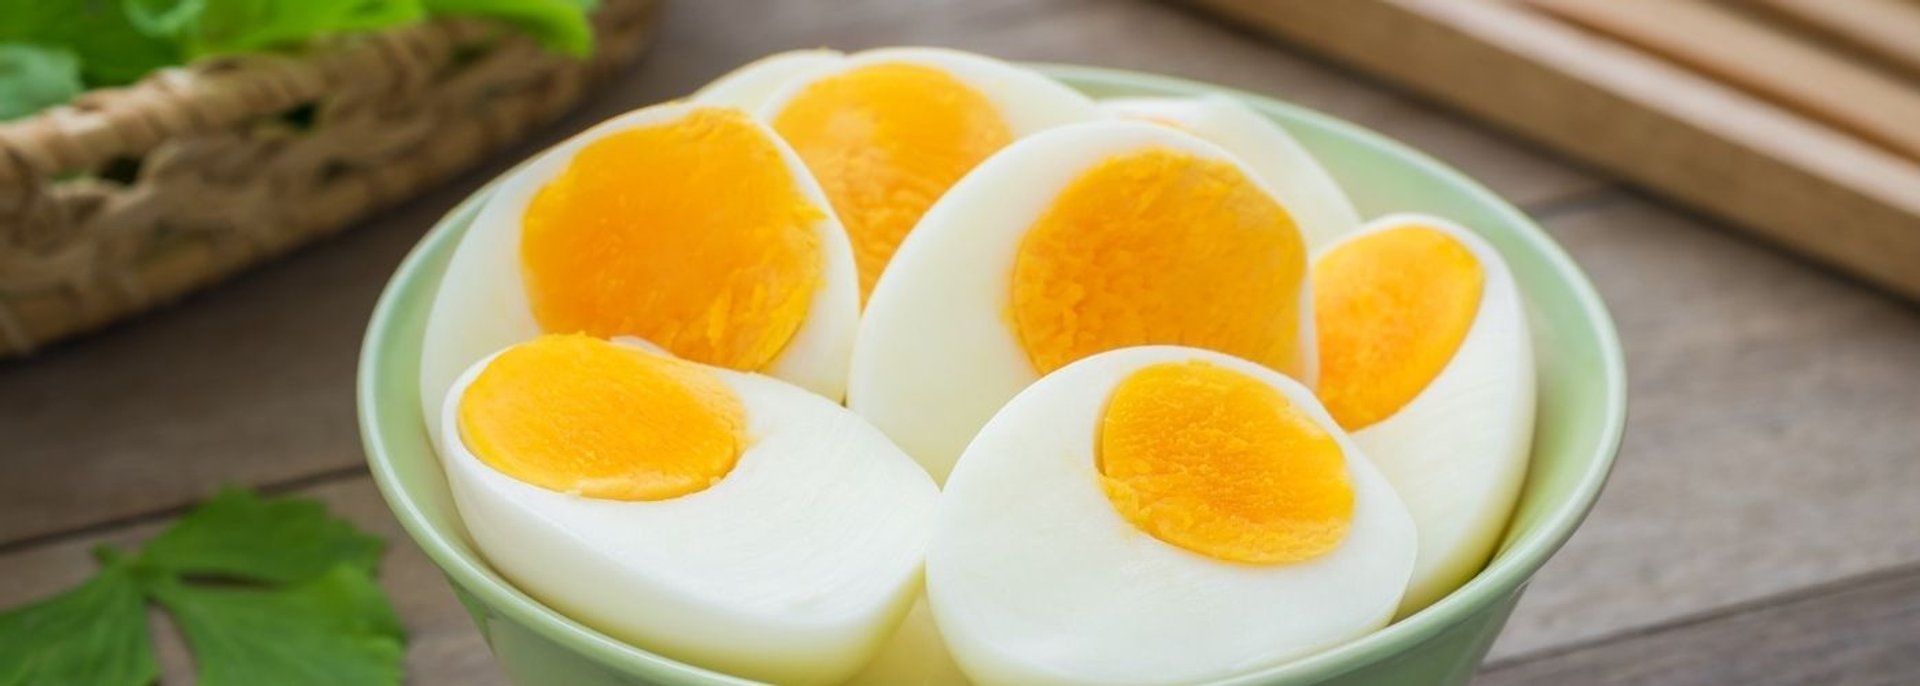 Jajka - ile można jeść?